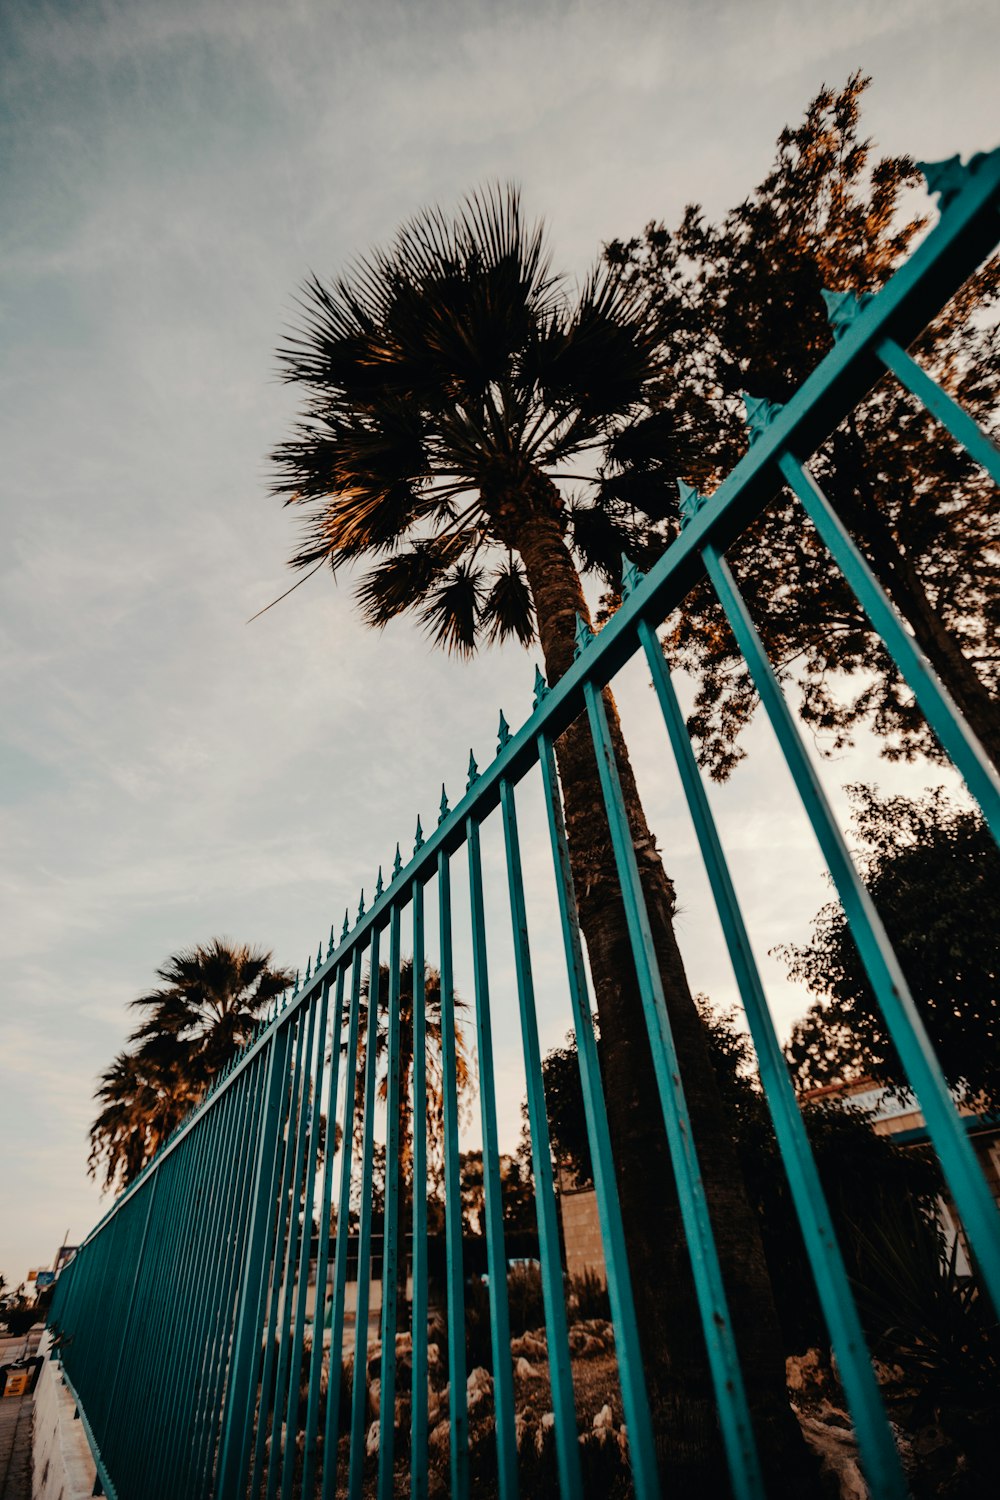 fan palm tree near blue metal fence